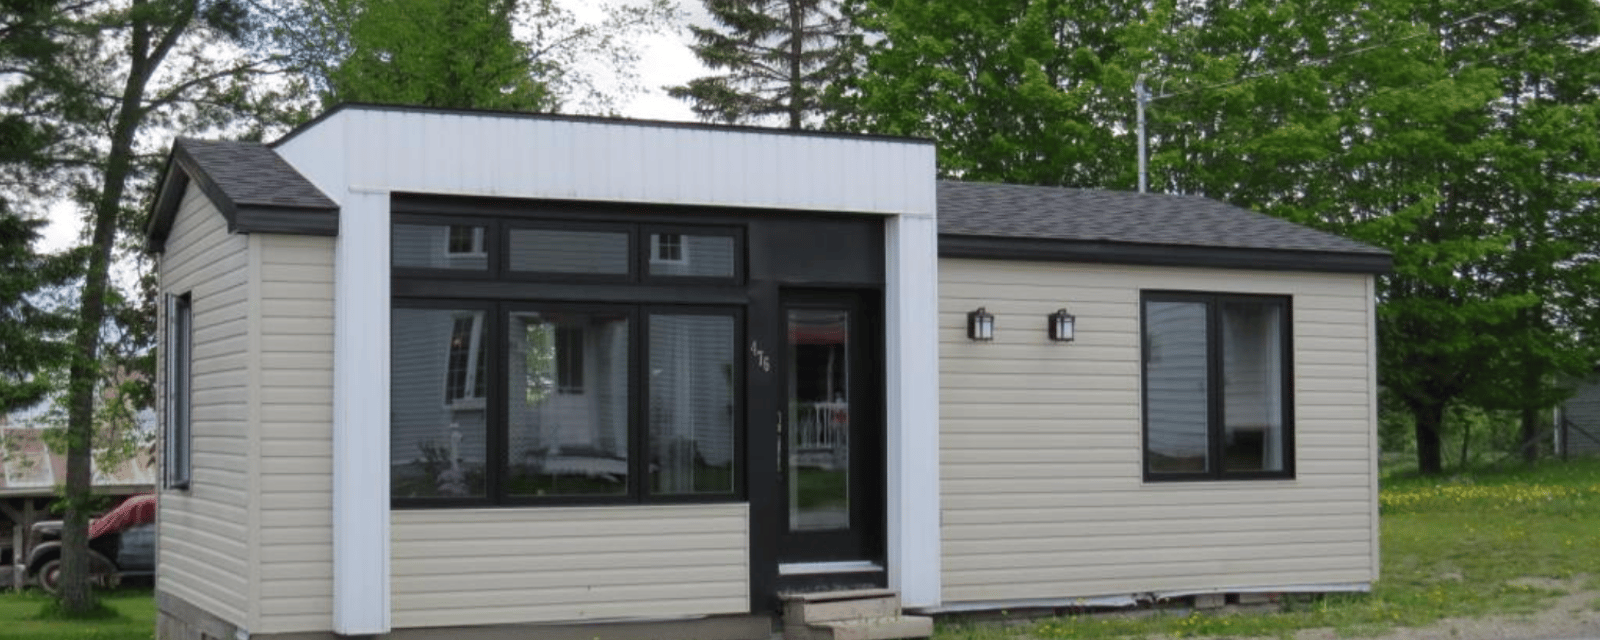 Vous pourriez acheter cette mini-maison pour bien moins cher qu'un condo à Montréal 